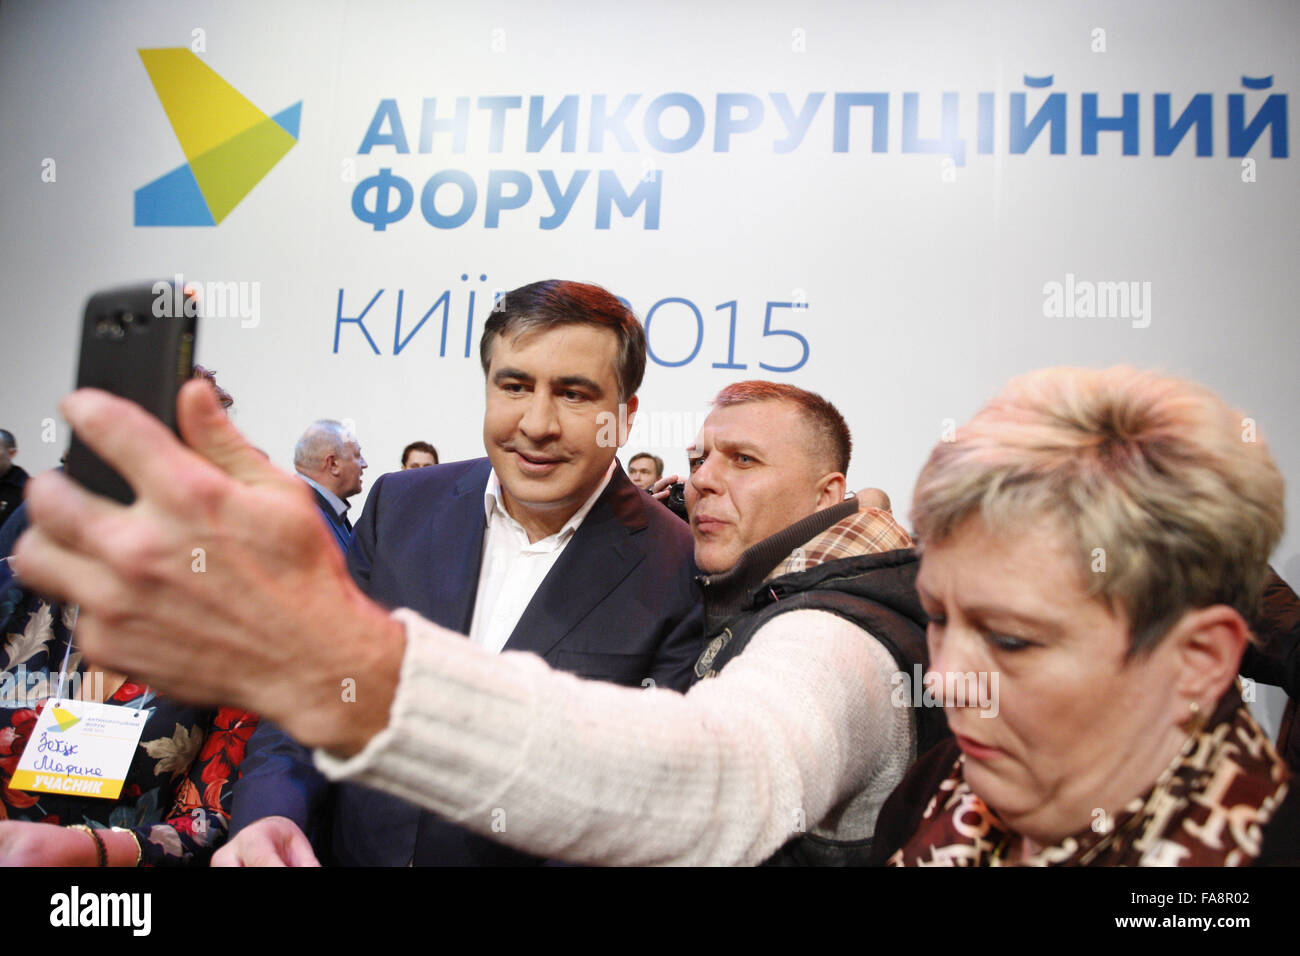 Kiev, Ukraine. 23 Décembre, 2015. Le gouverneur de la région d'Odessa, et l'ancien président géorgien Mikheil SAAKASHVILI (L) posent pour une photo lors de l'anti-corruption, le Forum ukrainien à Kiev, Ukraine, le 23 décembre, 2015. Saakashvili a accusé de corruption les ministres de l'Ukraine, lors d'une réunion de la réforme du Conseil National, le 14 décembre. © Serg Glovny/ZUMA/Alamy Fil Live News Crédit : ZUMA Press, Inc./Alamy Live News Banque D'Images